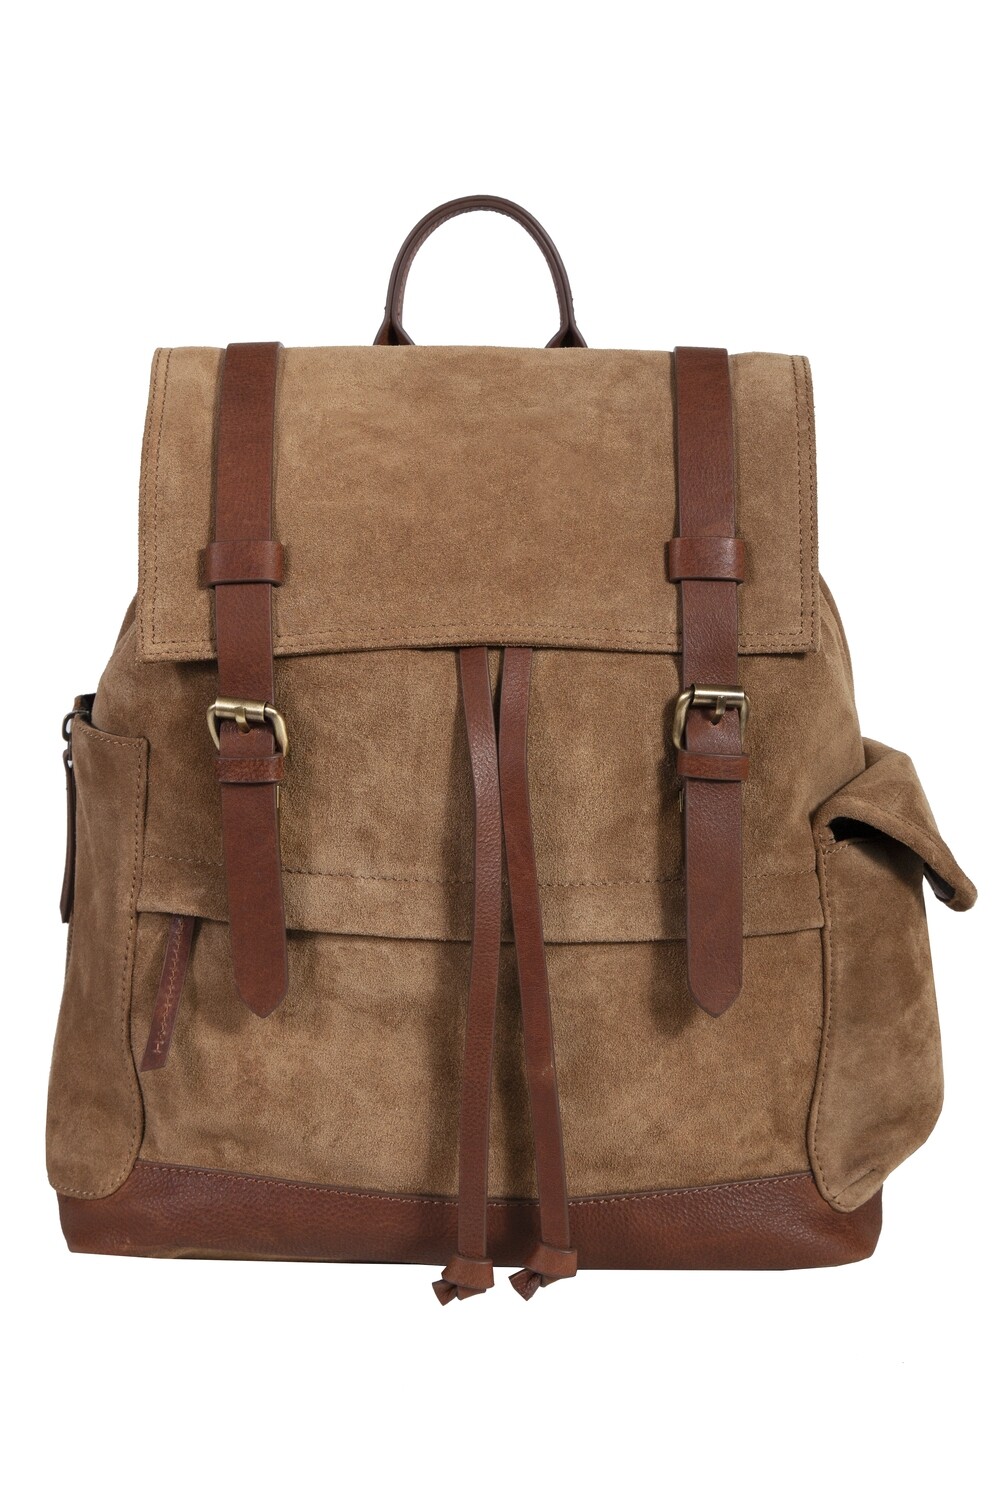 Tan Backpack